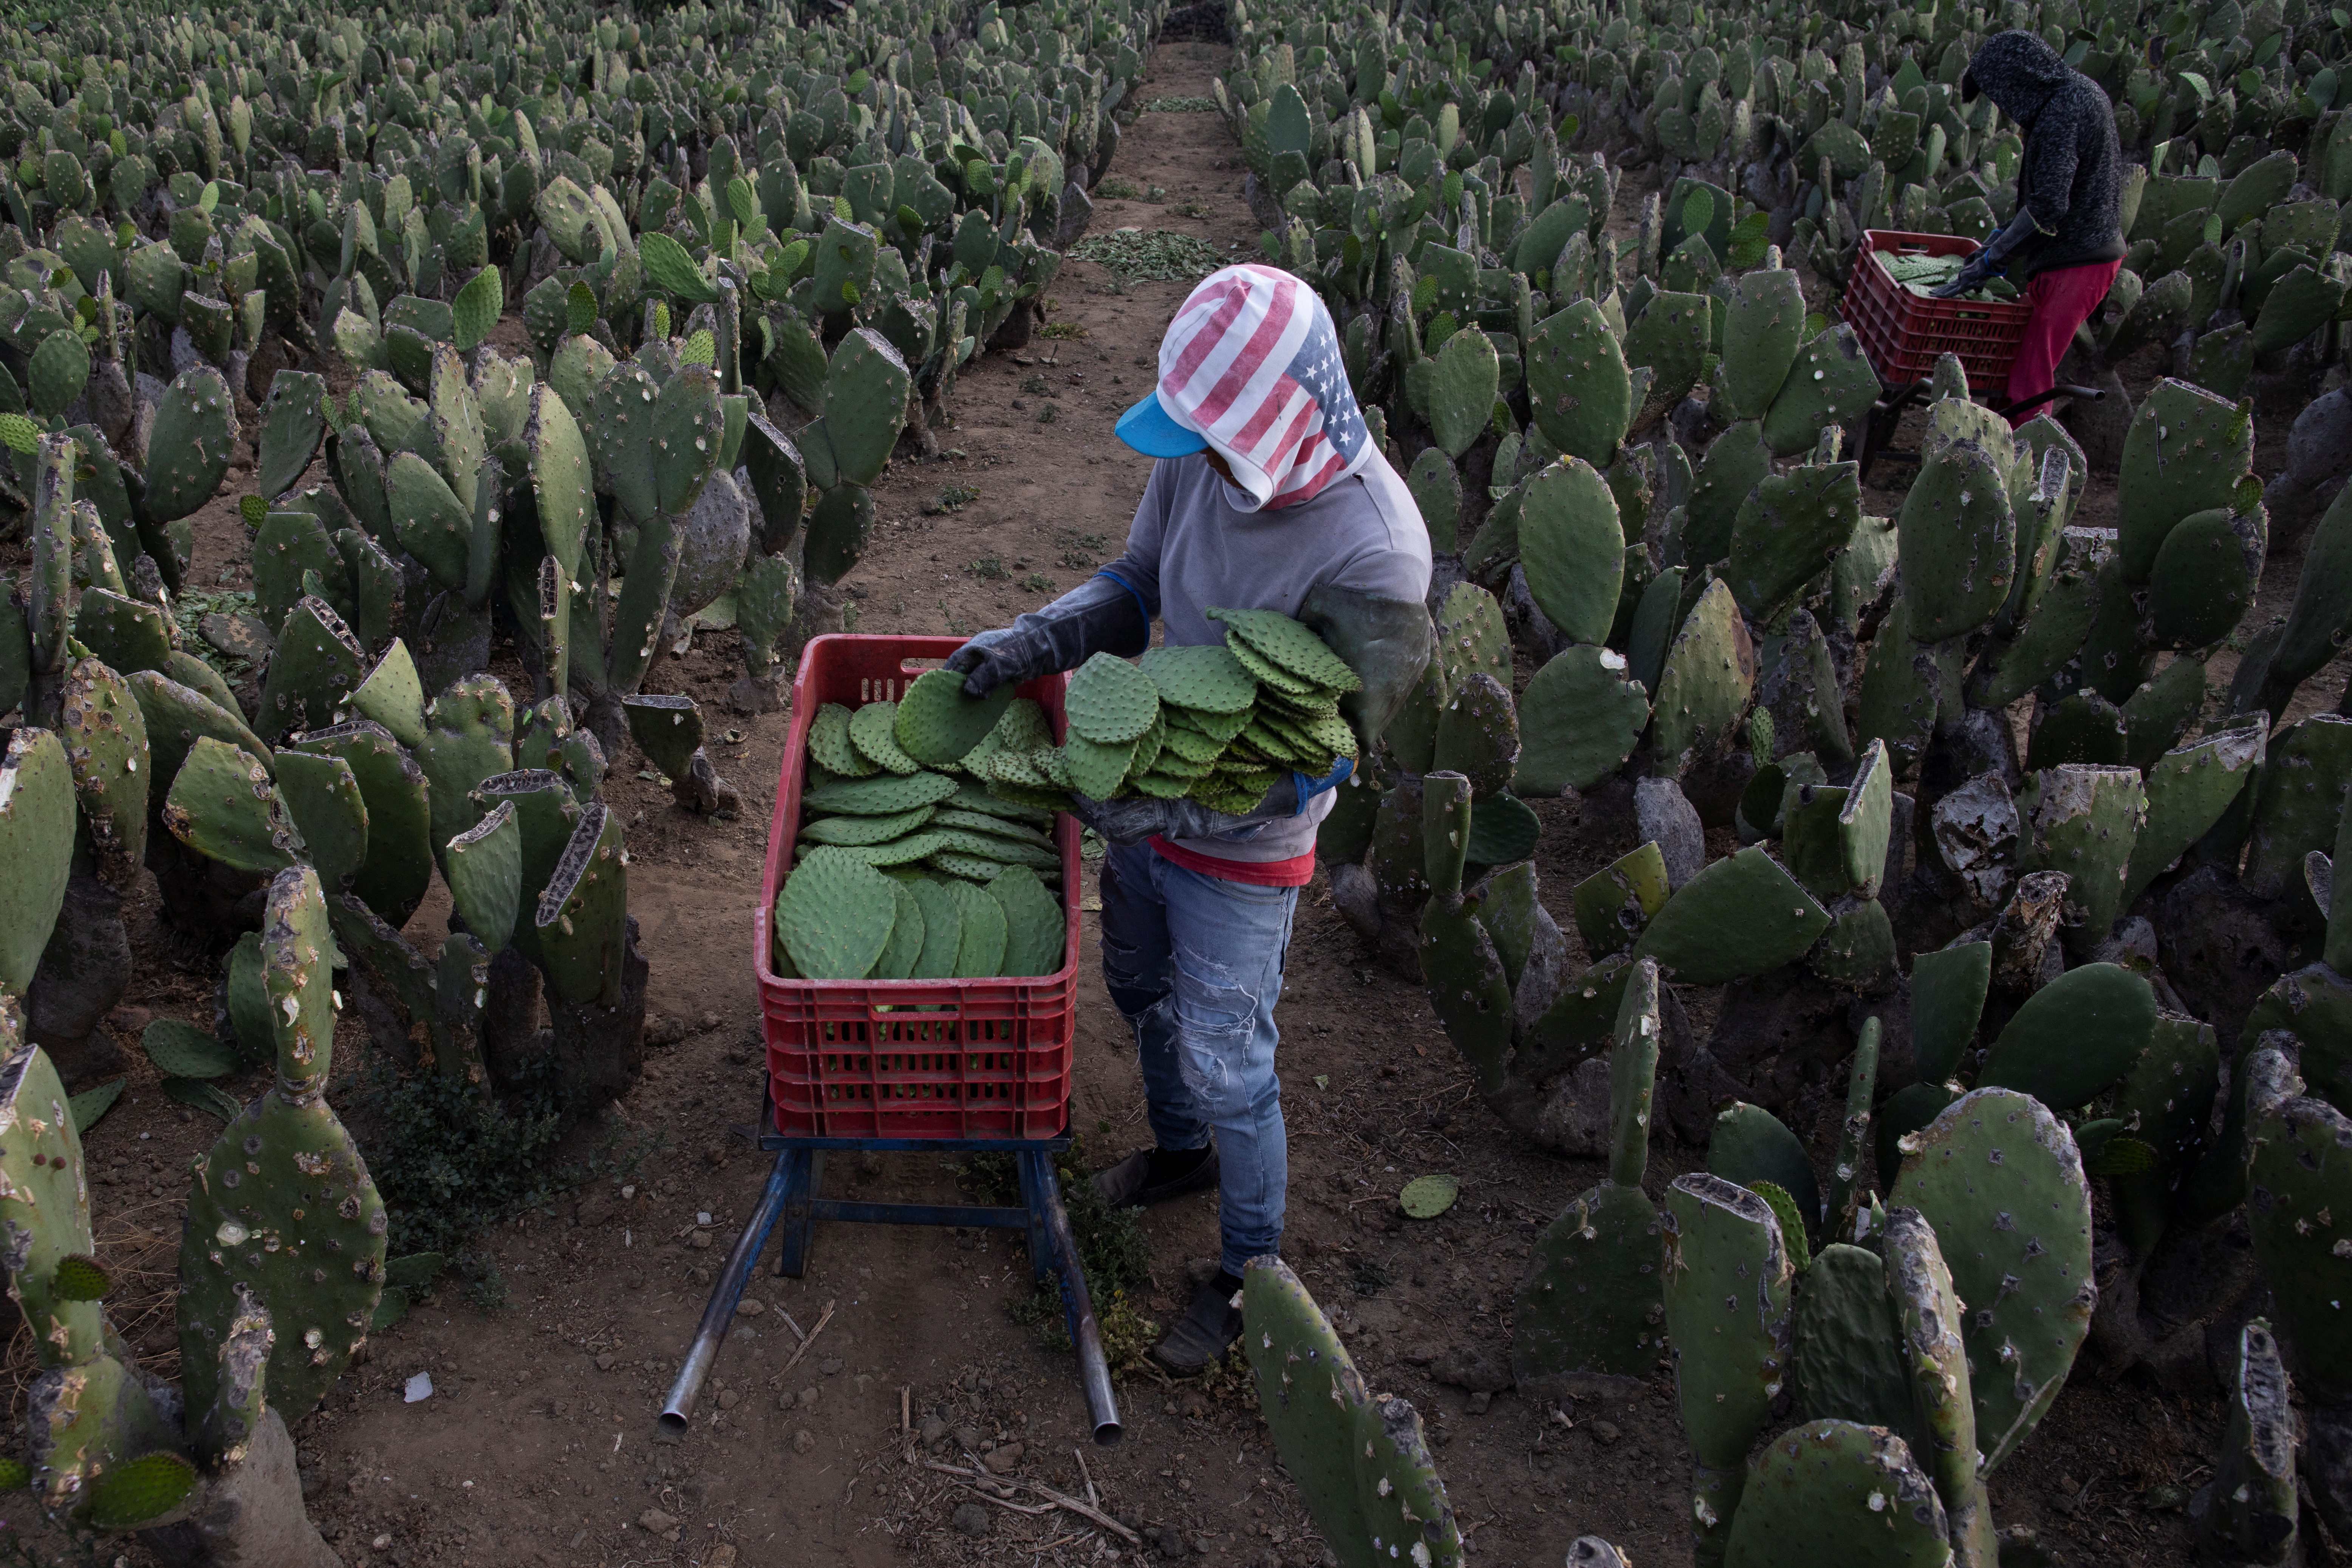 El nopal entrará en la lista de alimentos básicos y estratégicos (Foto: Reuters / Carlos Jasso)